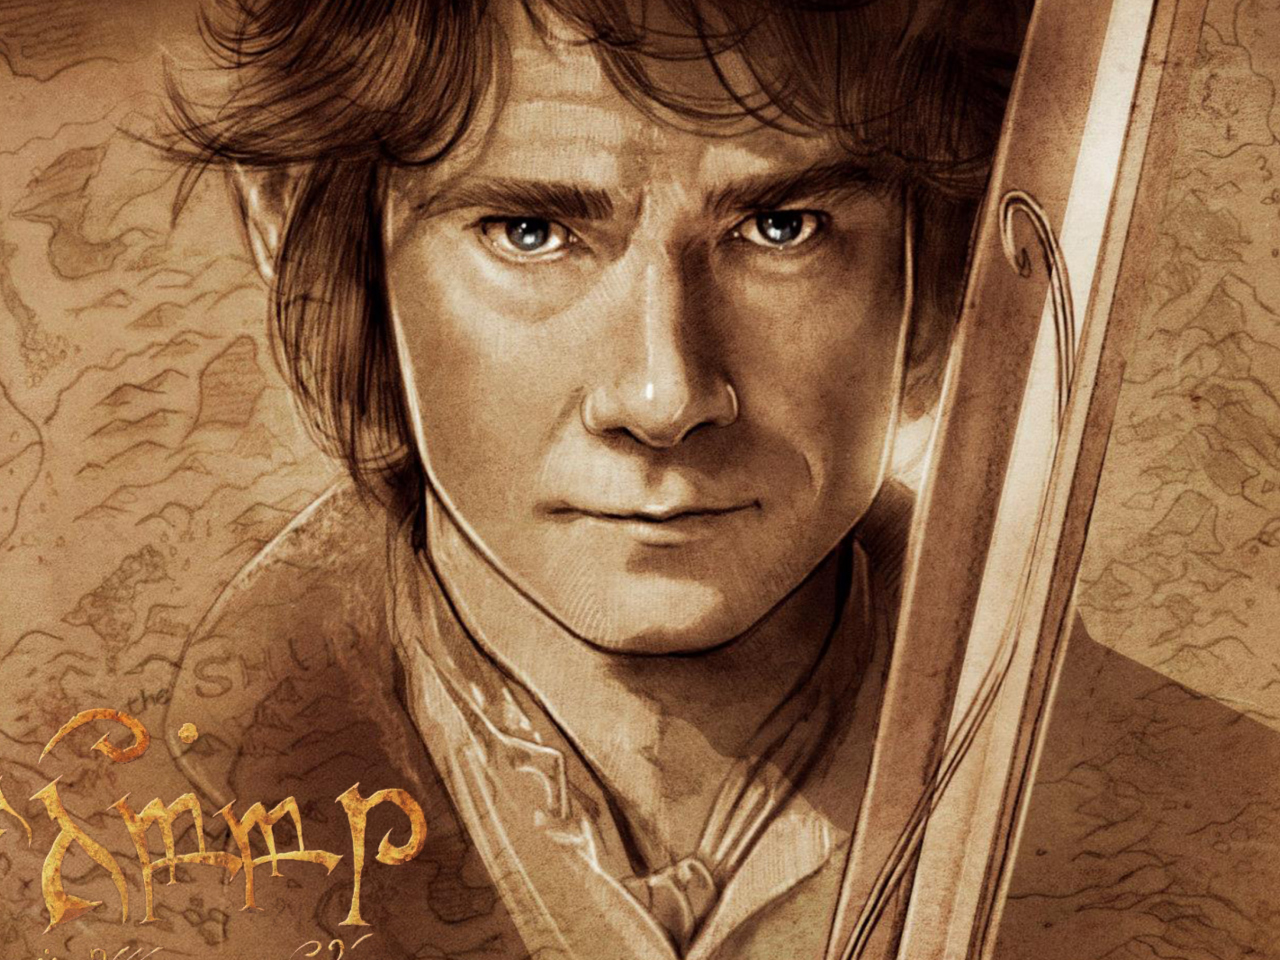 The Hobbit Bilbo Baggins Artwork wallpaper 1280x960